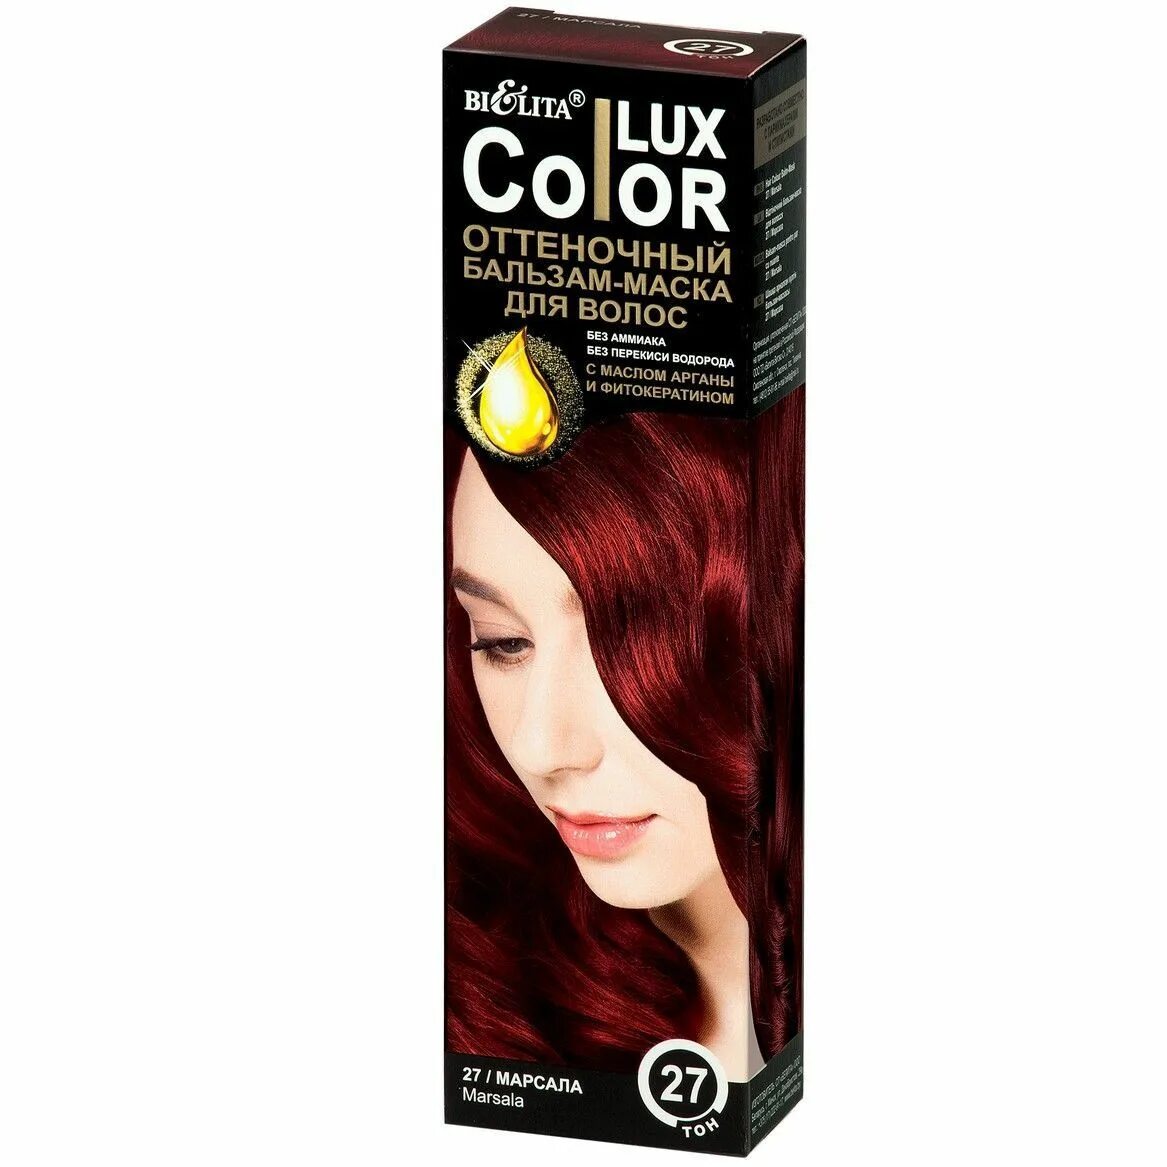 Lux Color оттеночный бальзам-маска для волос тон 27 марсала (туба 100 мл). Оттеночный бальзам Белита Color Lux. Color Lux бальзам маска оттеночная для волос тон 27 марсала 100мл. Оттеночный бальзам Белита Color Lux палитра. Оттеночный бальзам белорусский